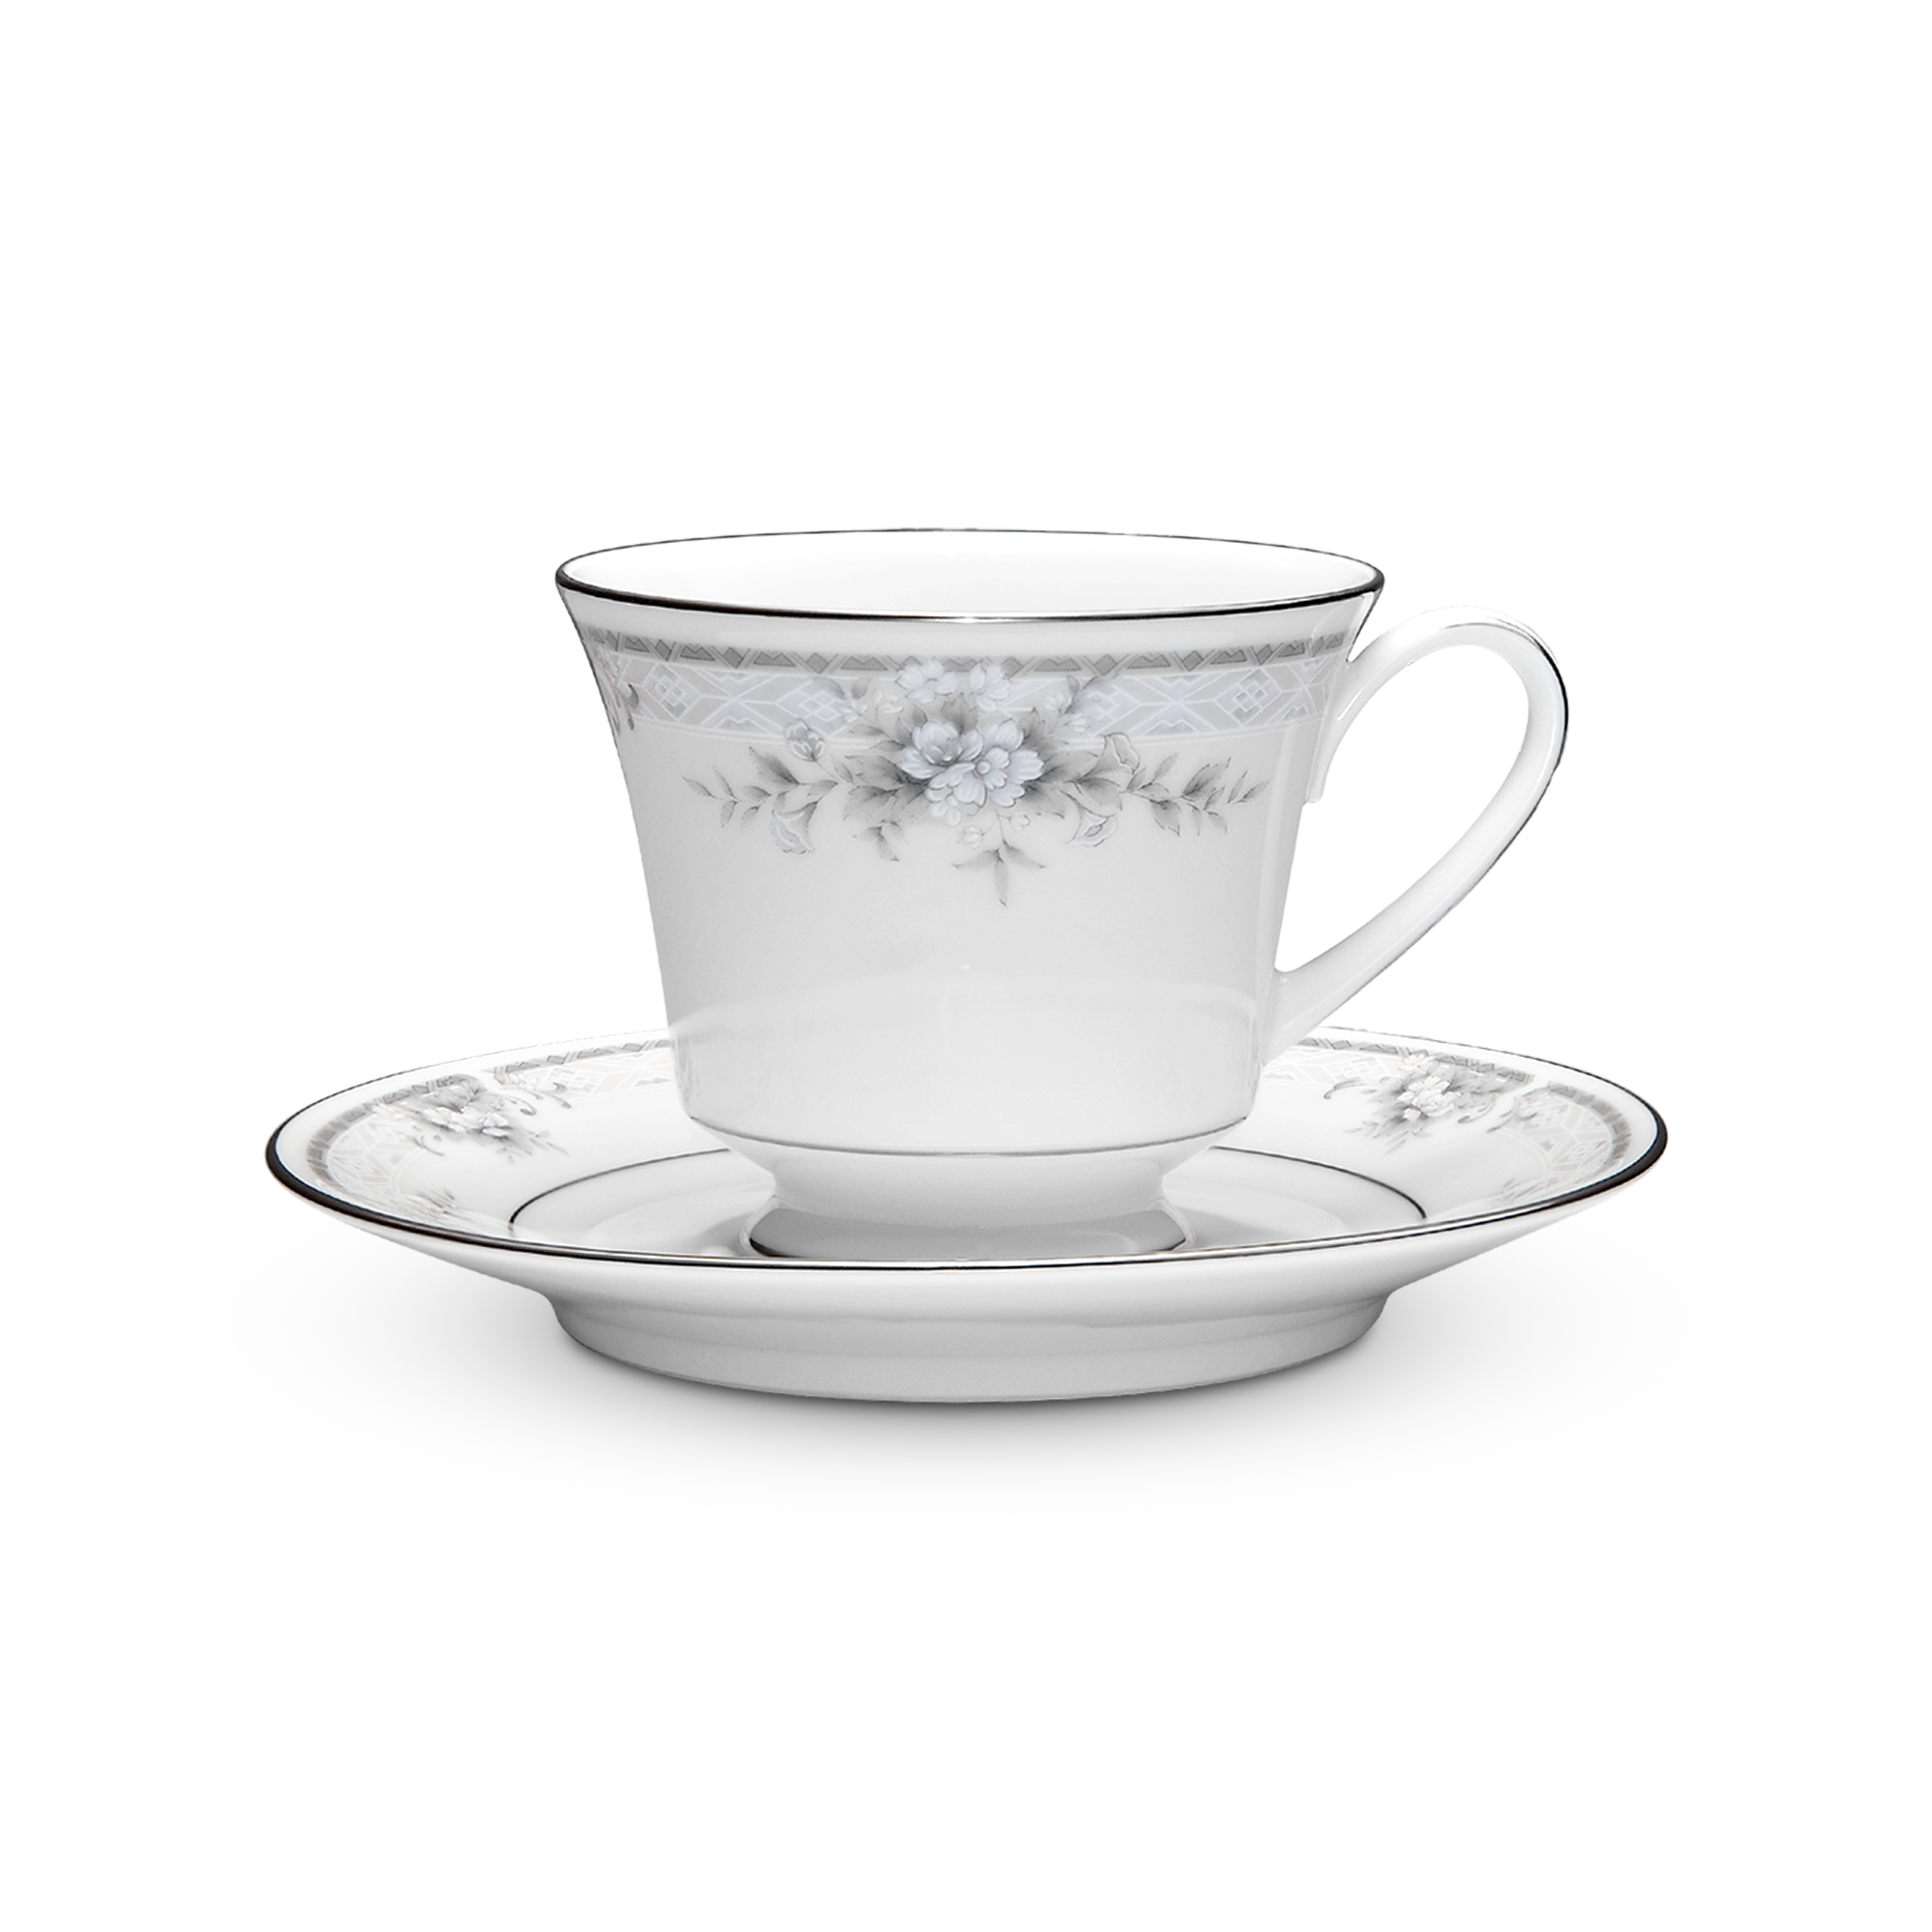  Chén trà (tách trà) kèm đĩa lót 220ml sứ trắng | Sweet Leilani 3482L-T91189 